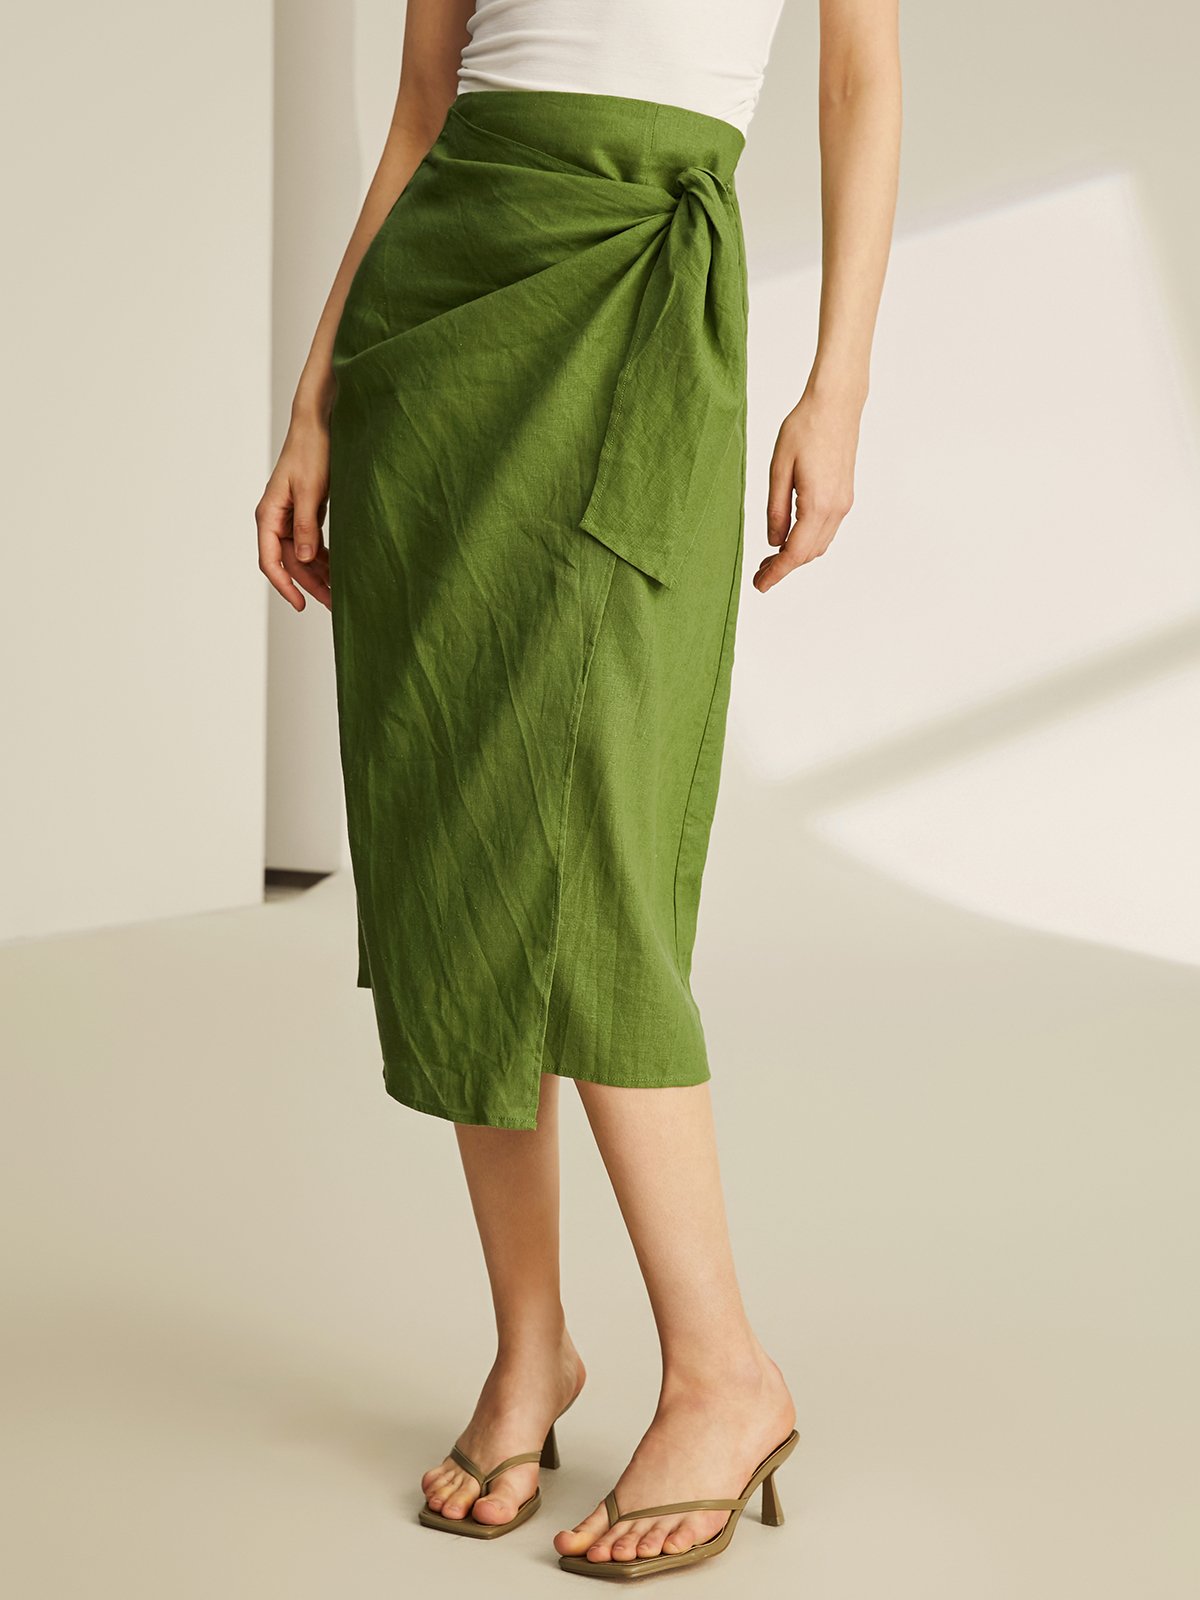 Linen Plain Elegant Tie-up Design Skirt